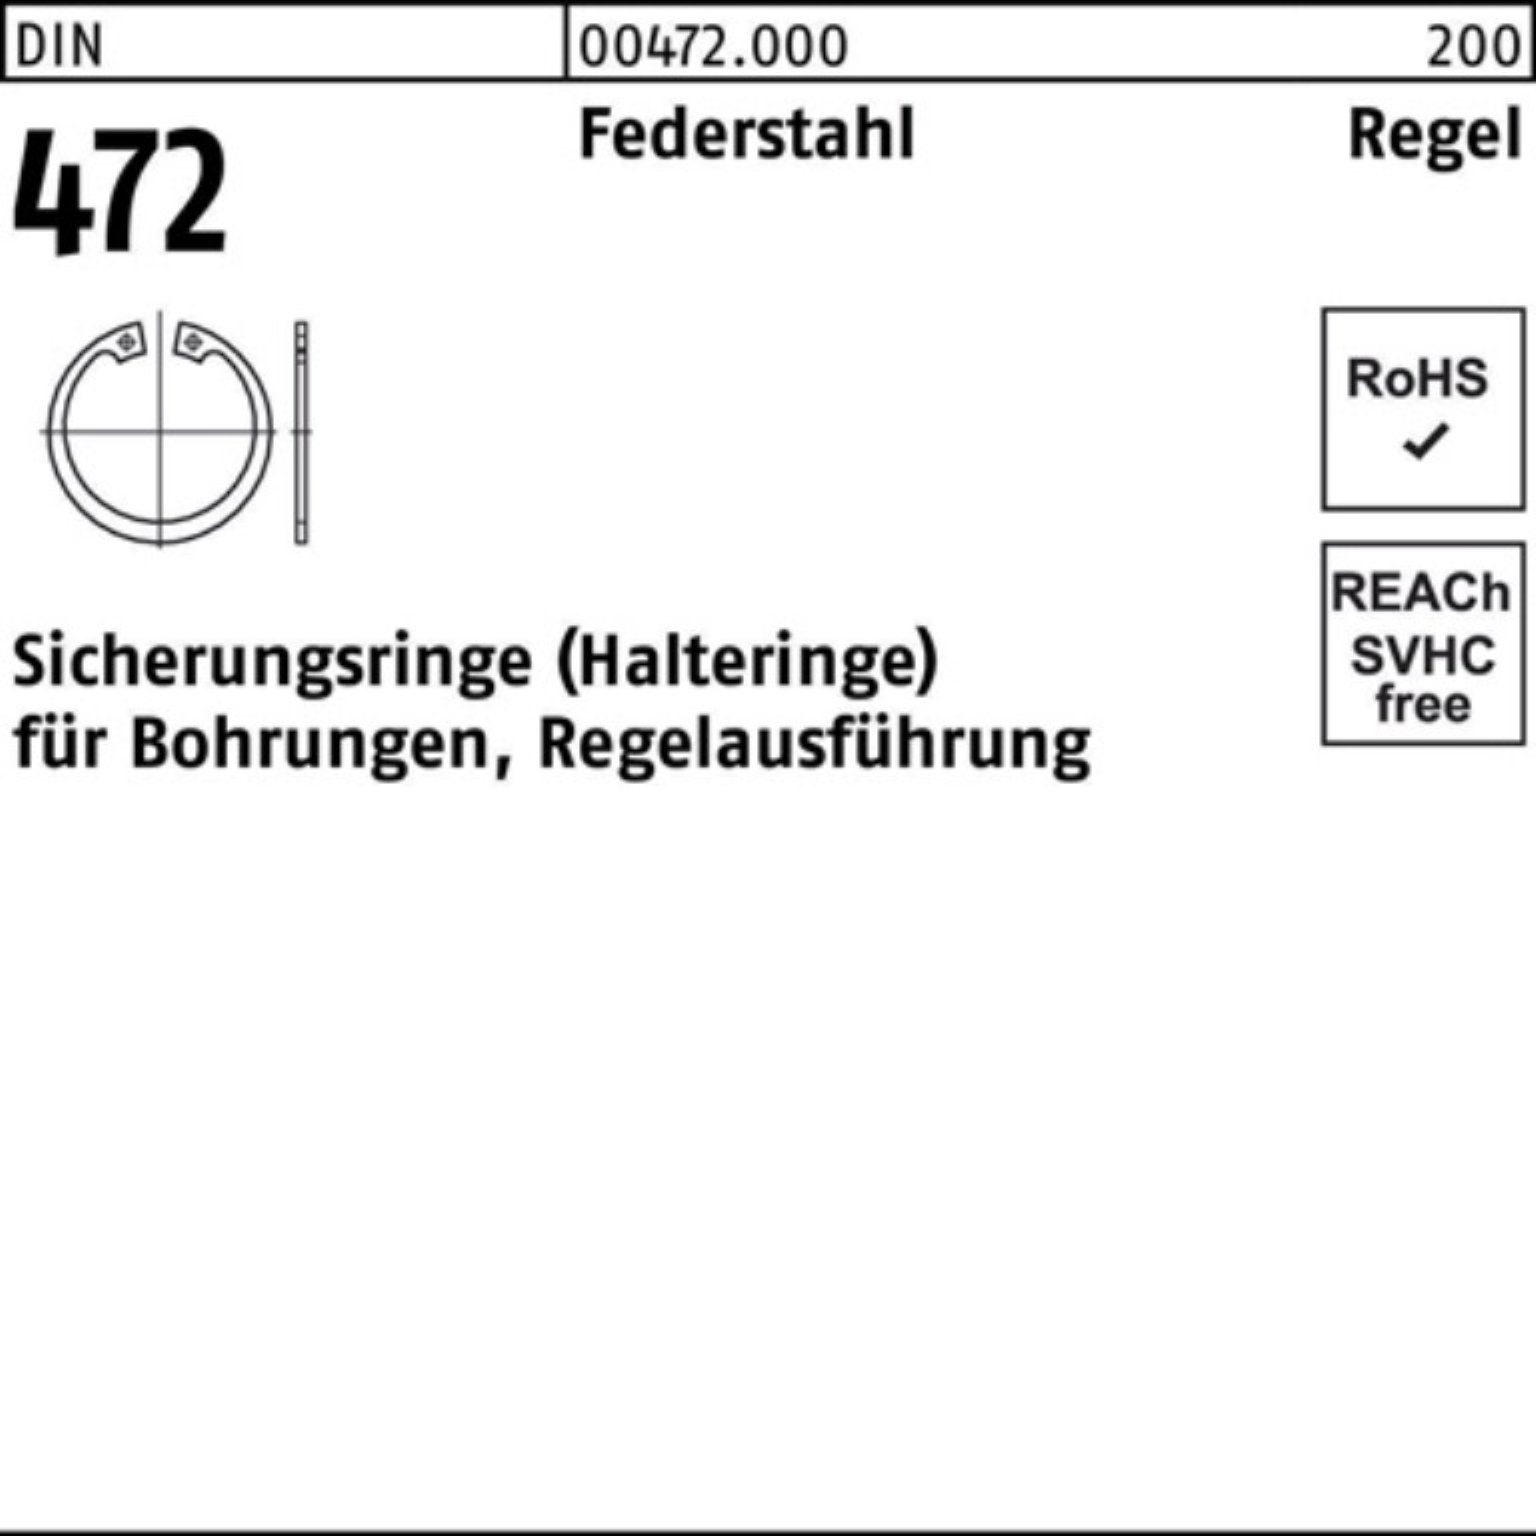 DIN Sicherungsring Reyher 472 200 Stü 1 14x Federstahl 200er Sicherungsring Pack Regelausf.